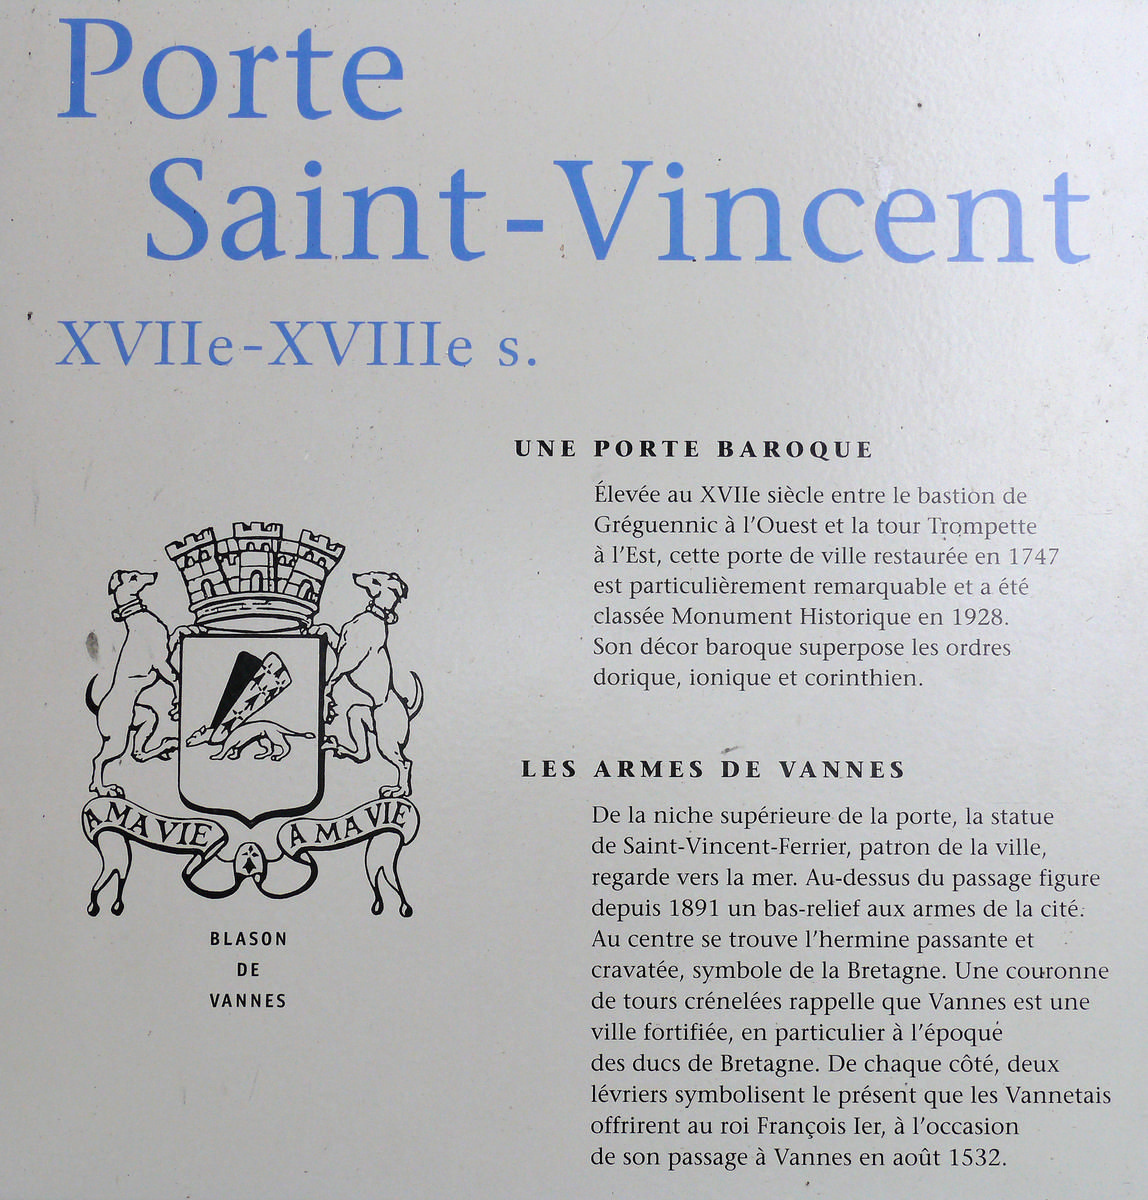 Porte Saint-Vincent 